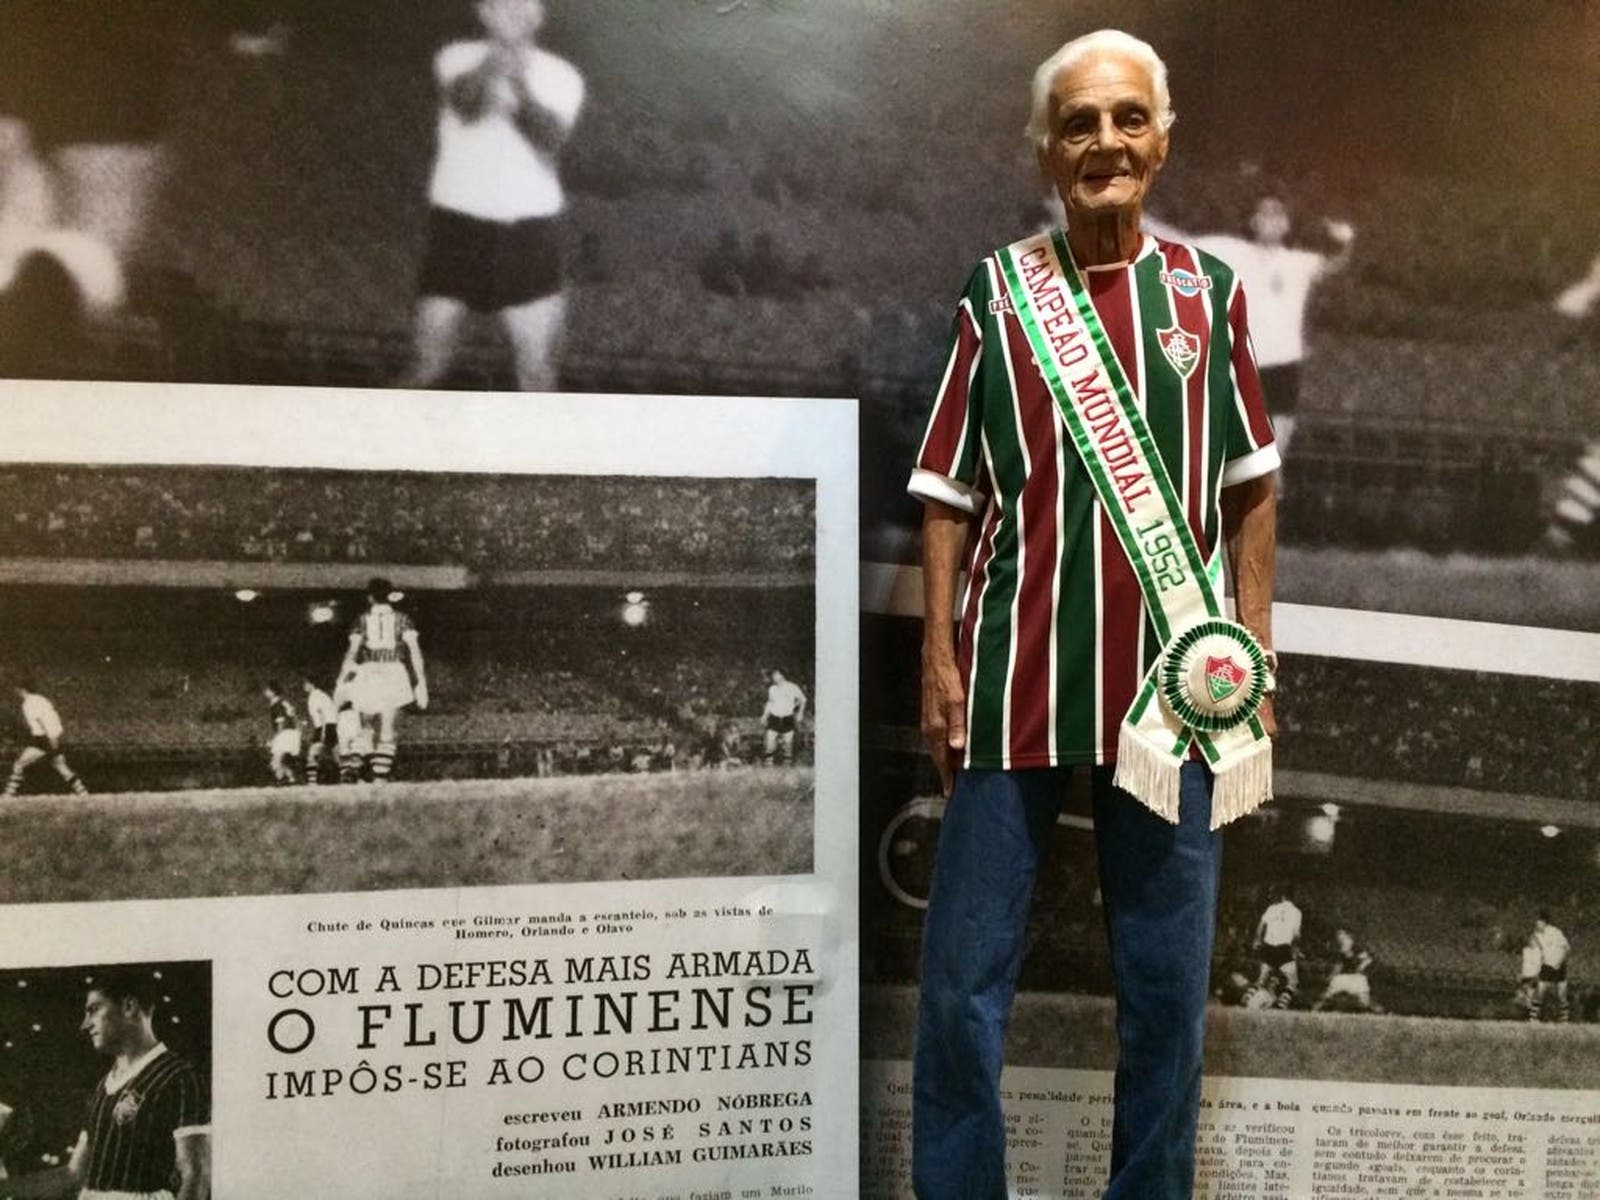 Fluminense Campeão Mundial de 1952  Fluminense, Campeões mundiais,  Fluminense football club